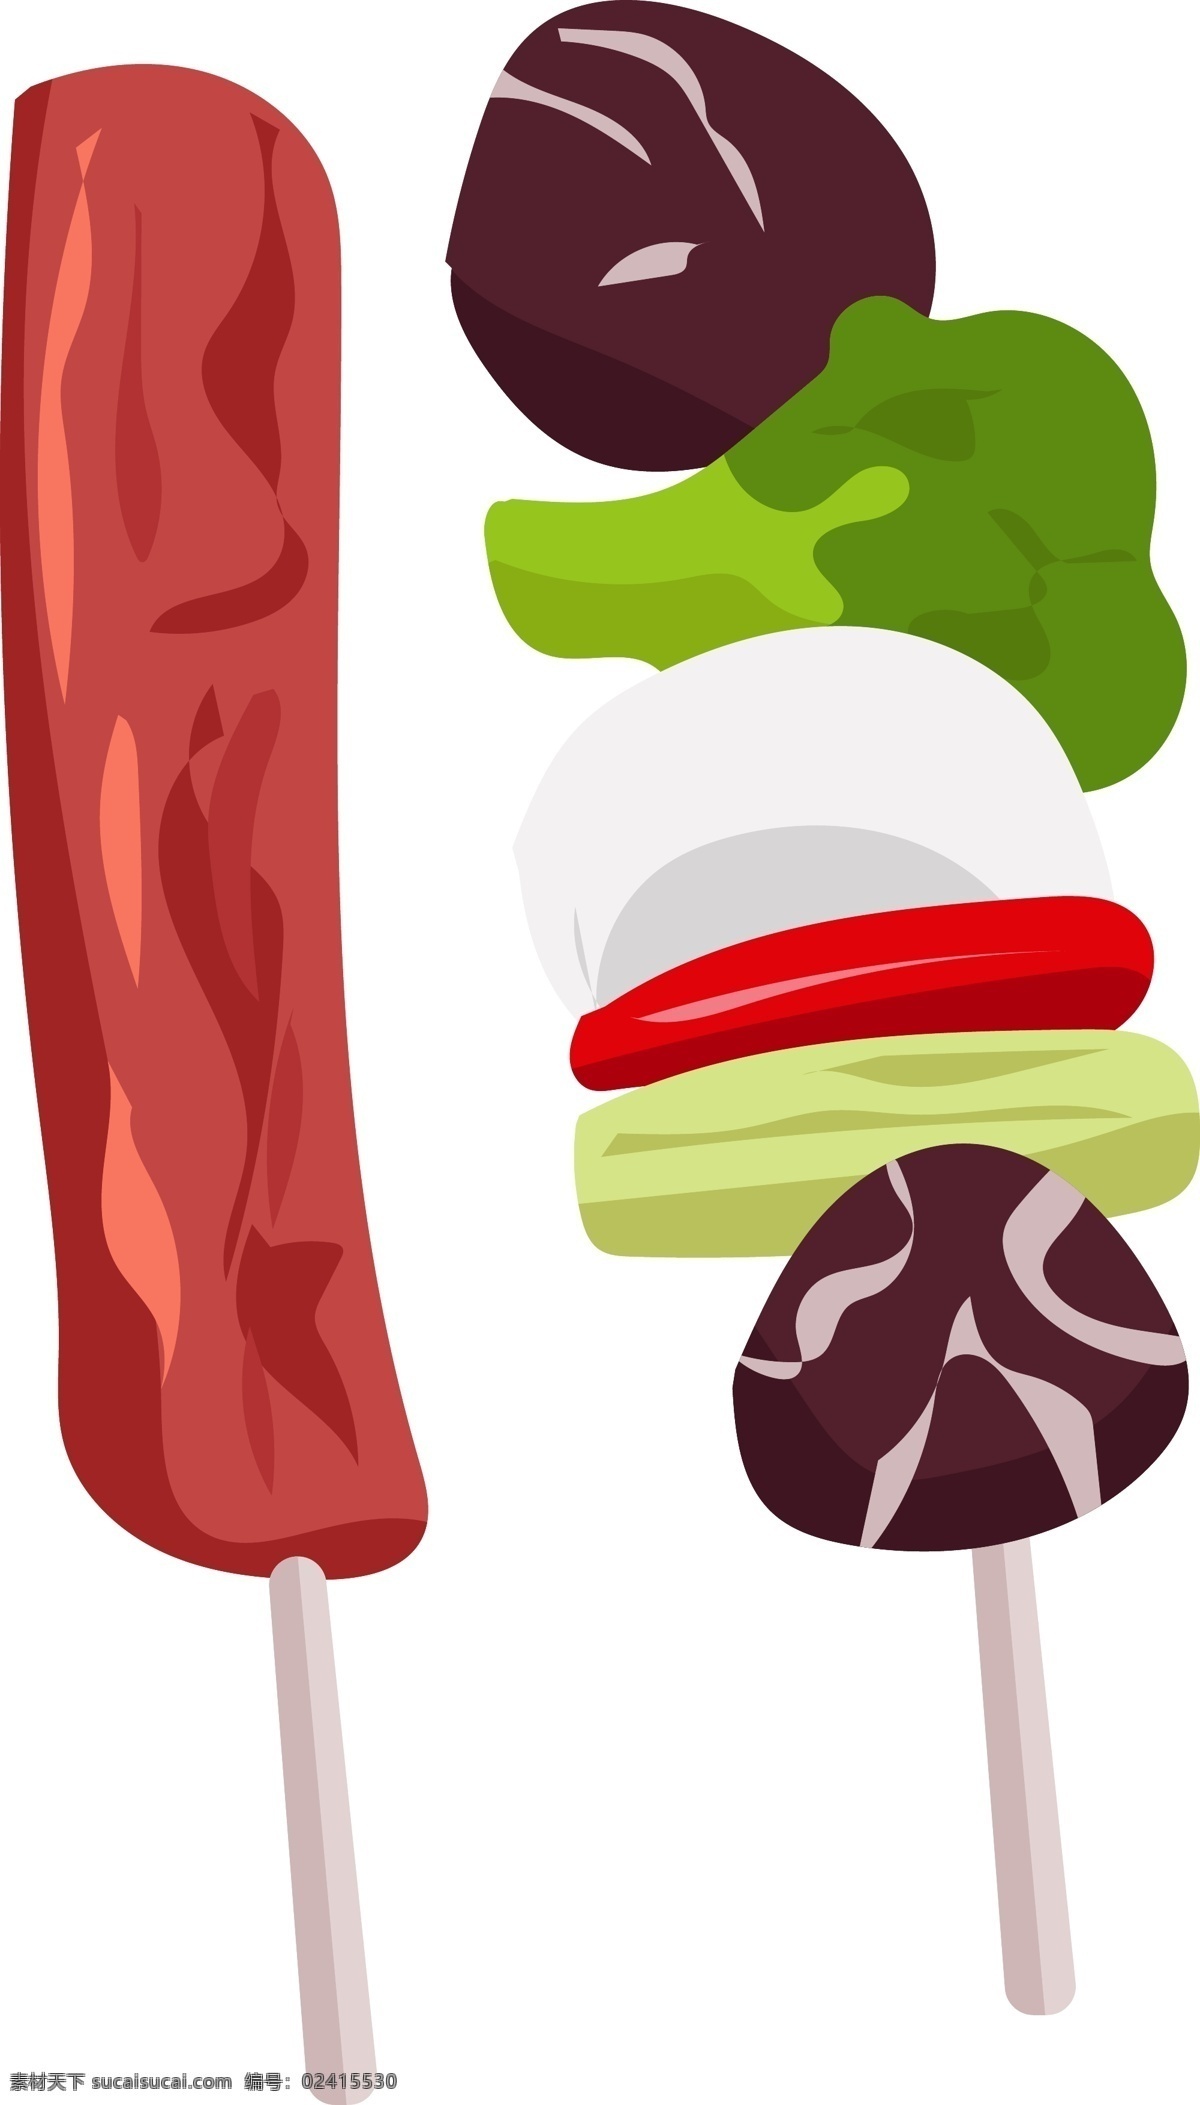 美味 肉类 烧烤 插画 红色的烤肉 卡通插画 烧烤插画 烤肉插画 蔬菜烧烤 美食烧烤 绿色的蔬菜